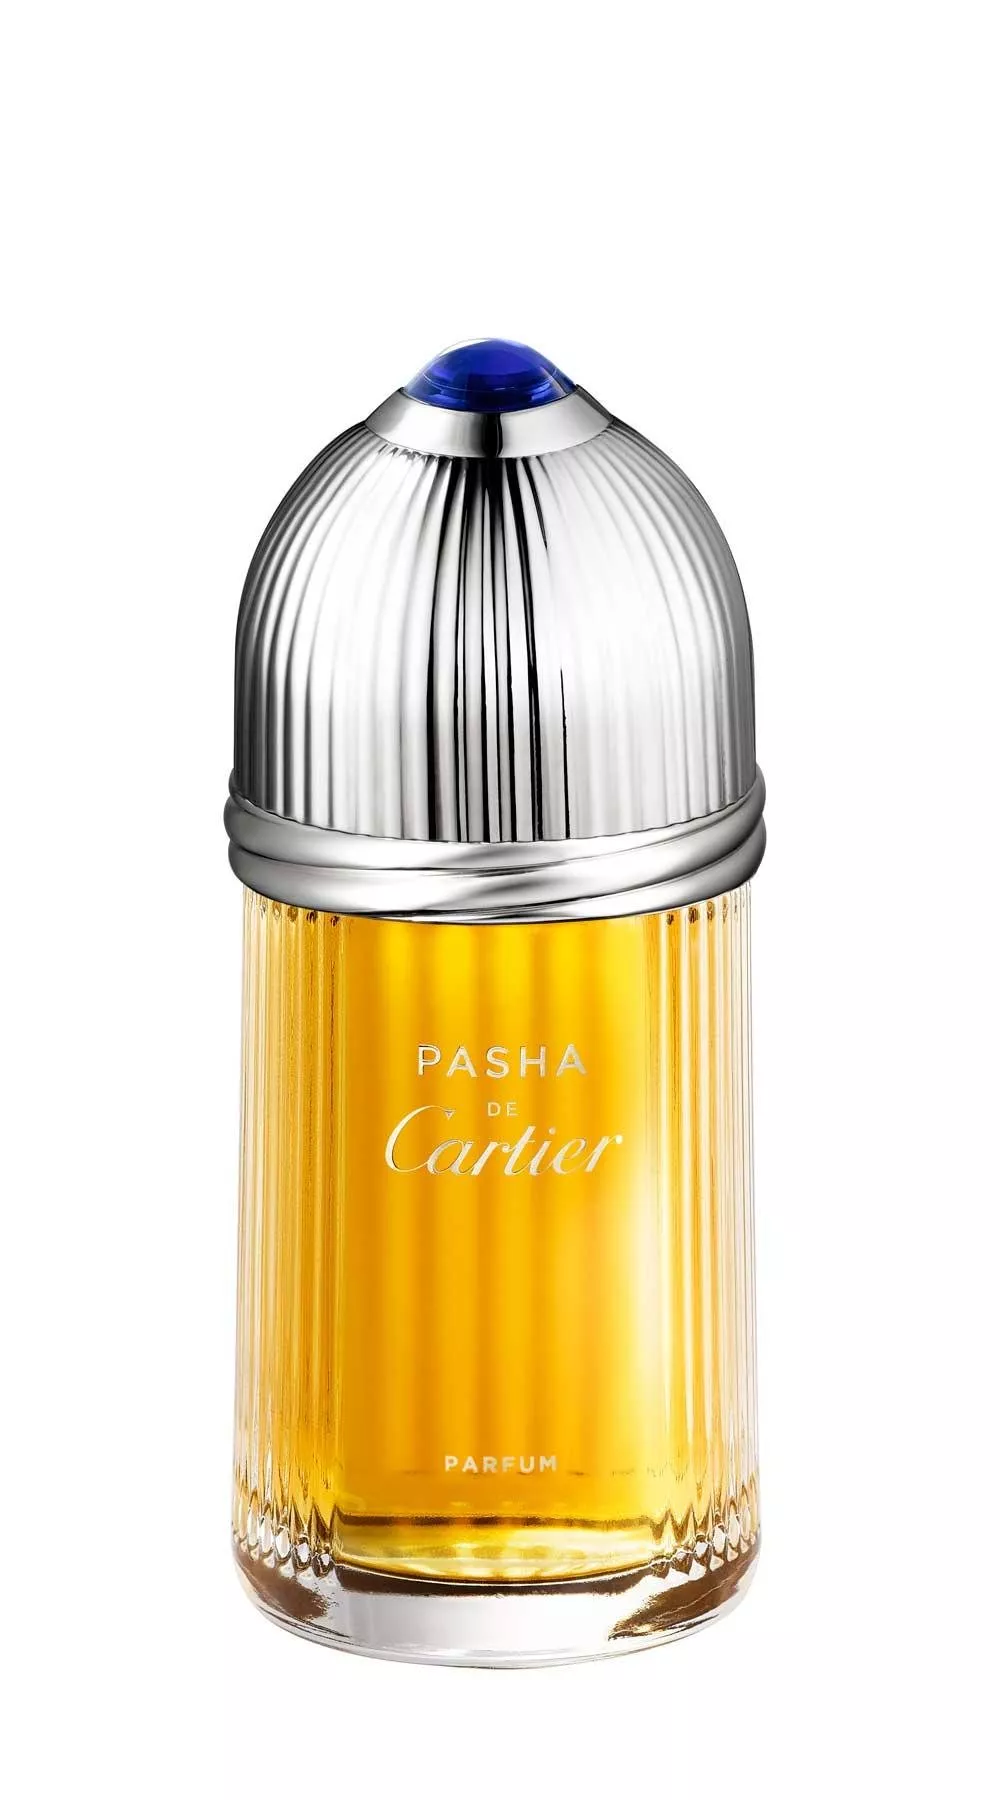 Cartier تطلق إصدار جديد من عطر Pasha de Cartier Eau de Toilette